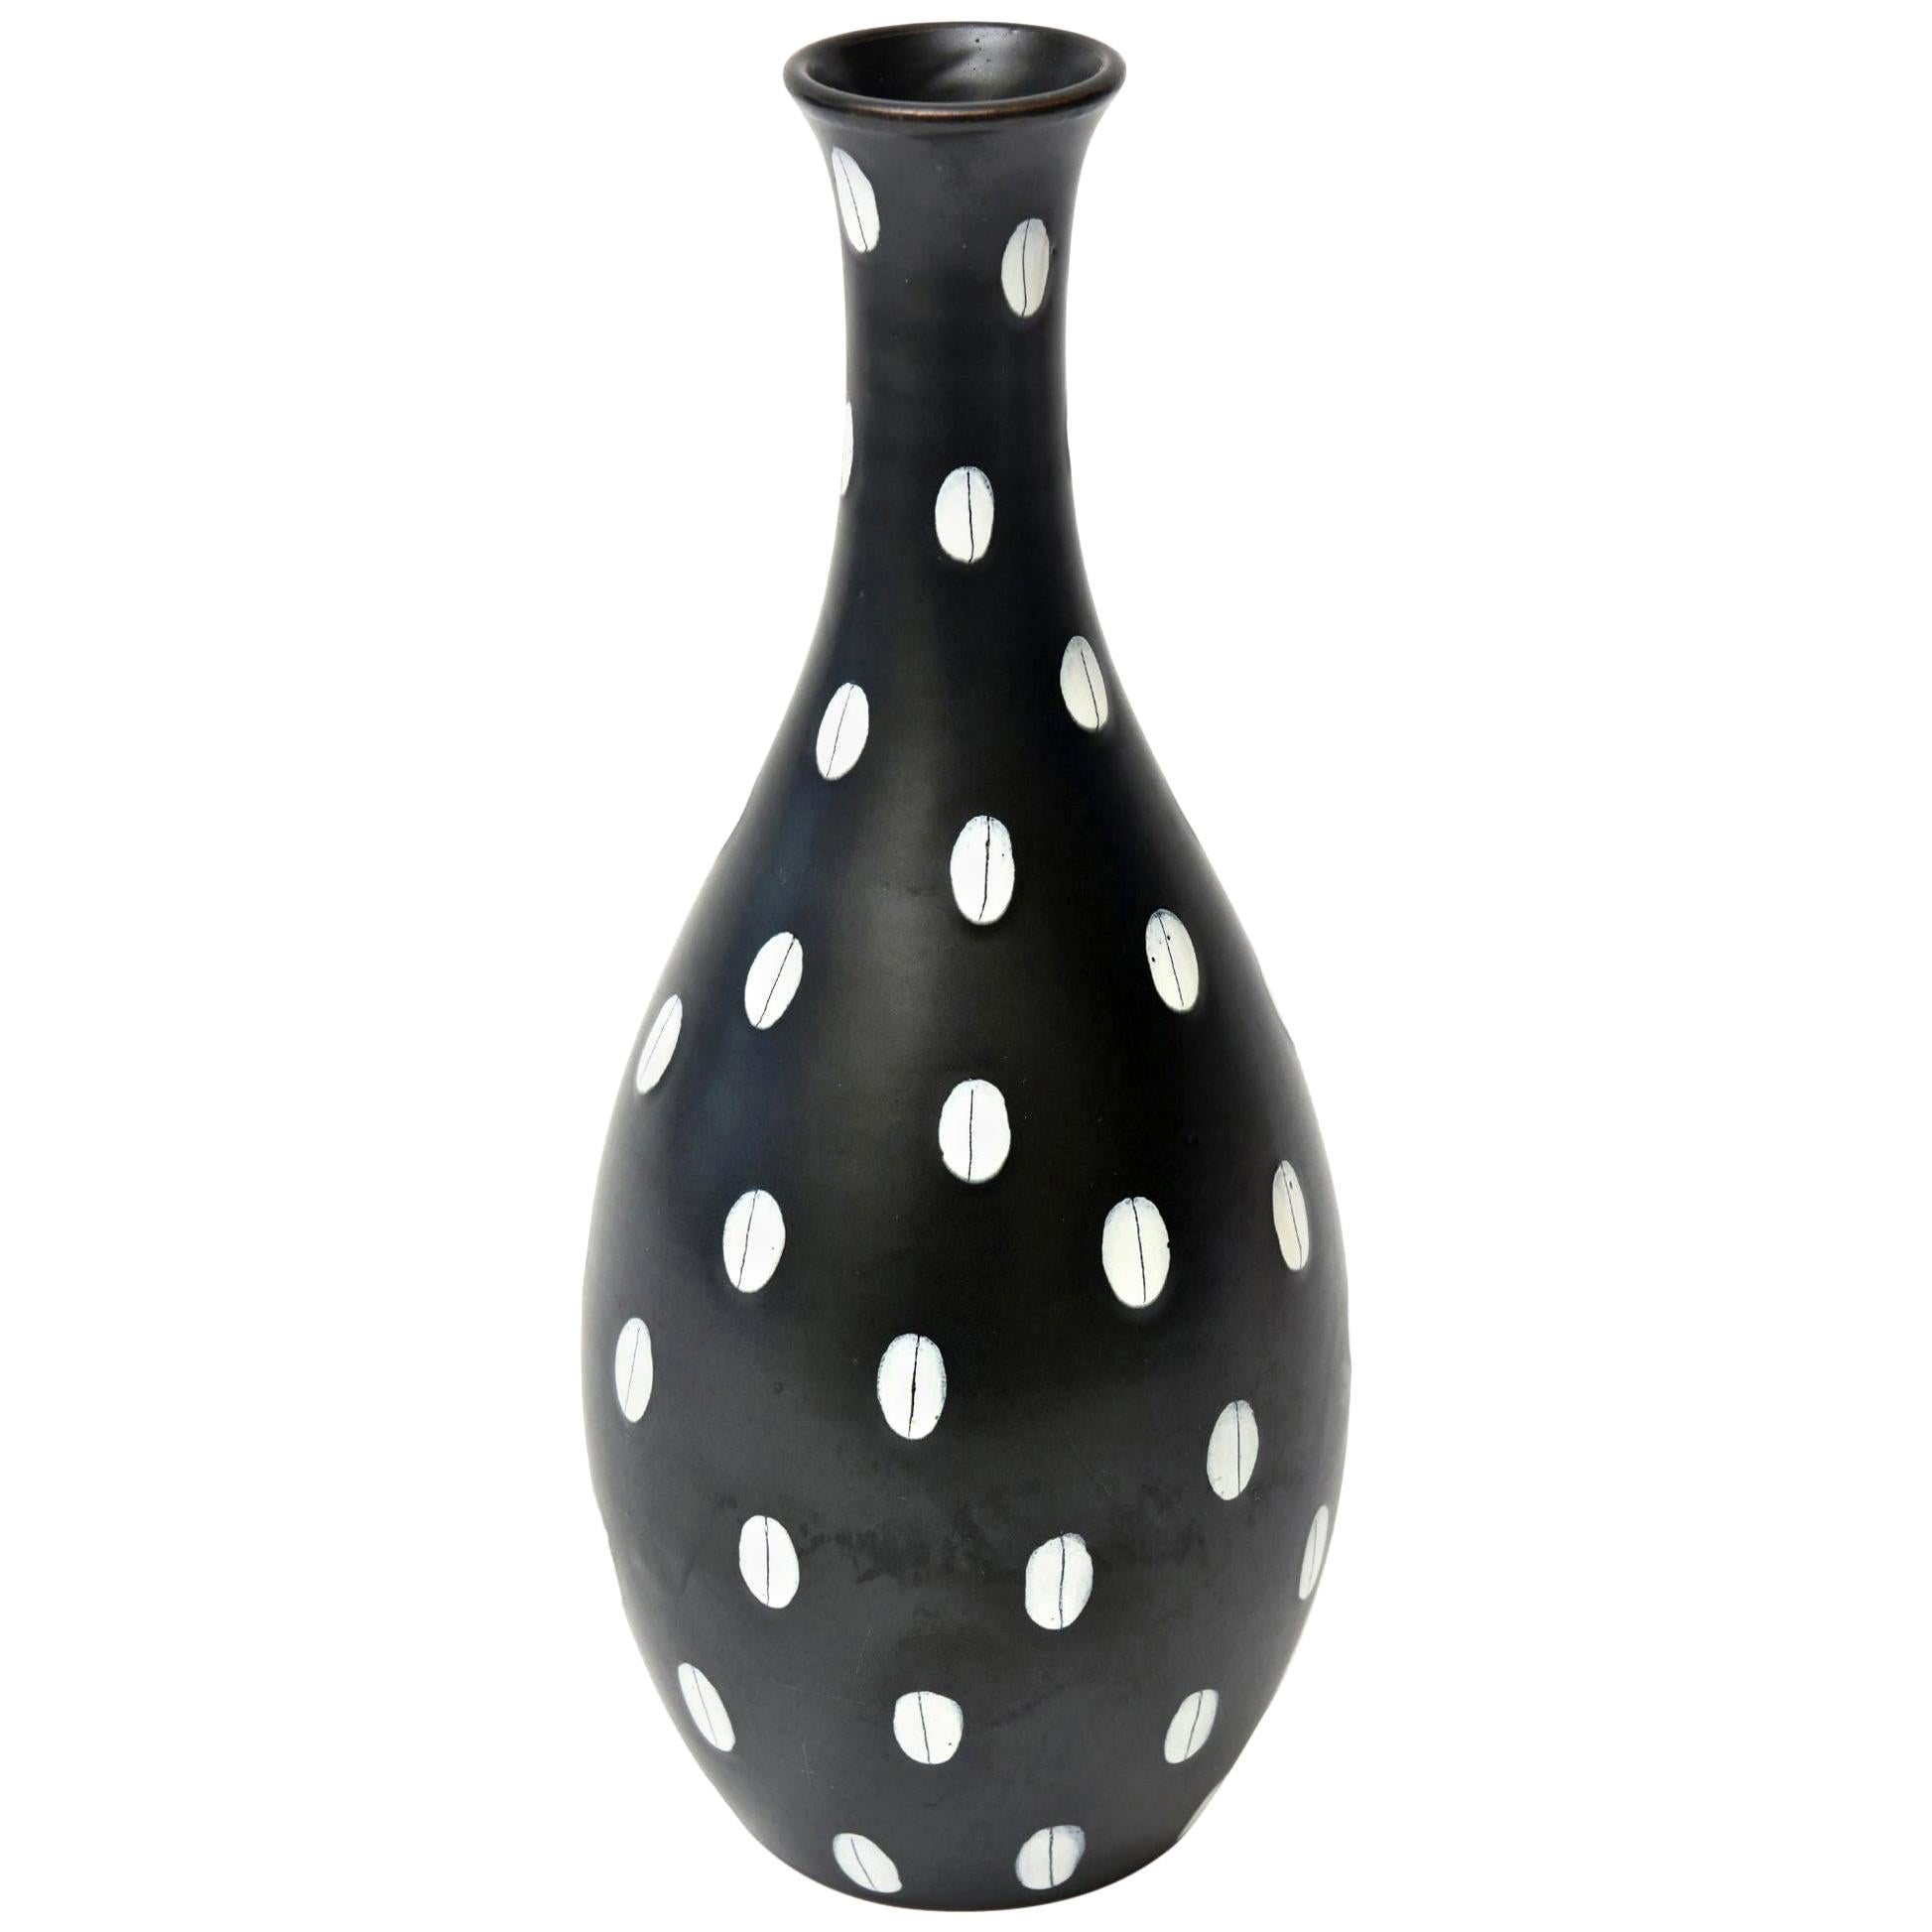 Aldo Londi for Bitossi Italian Black and White Ceramic Vase Vintage